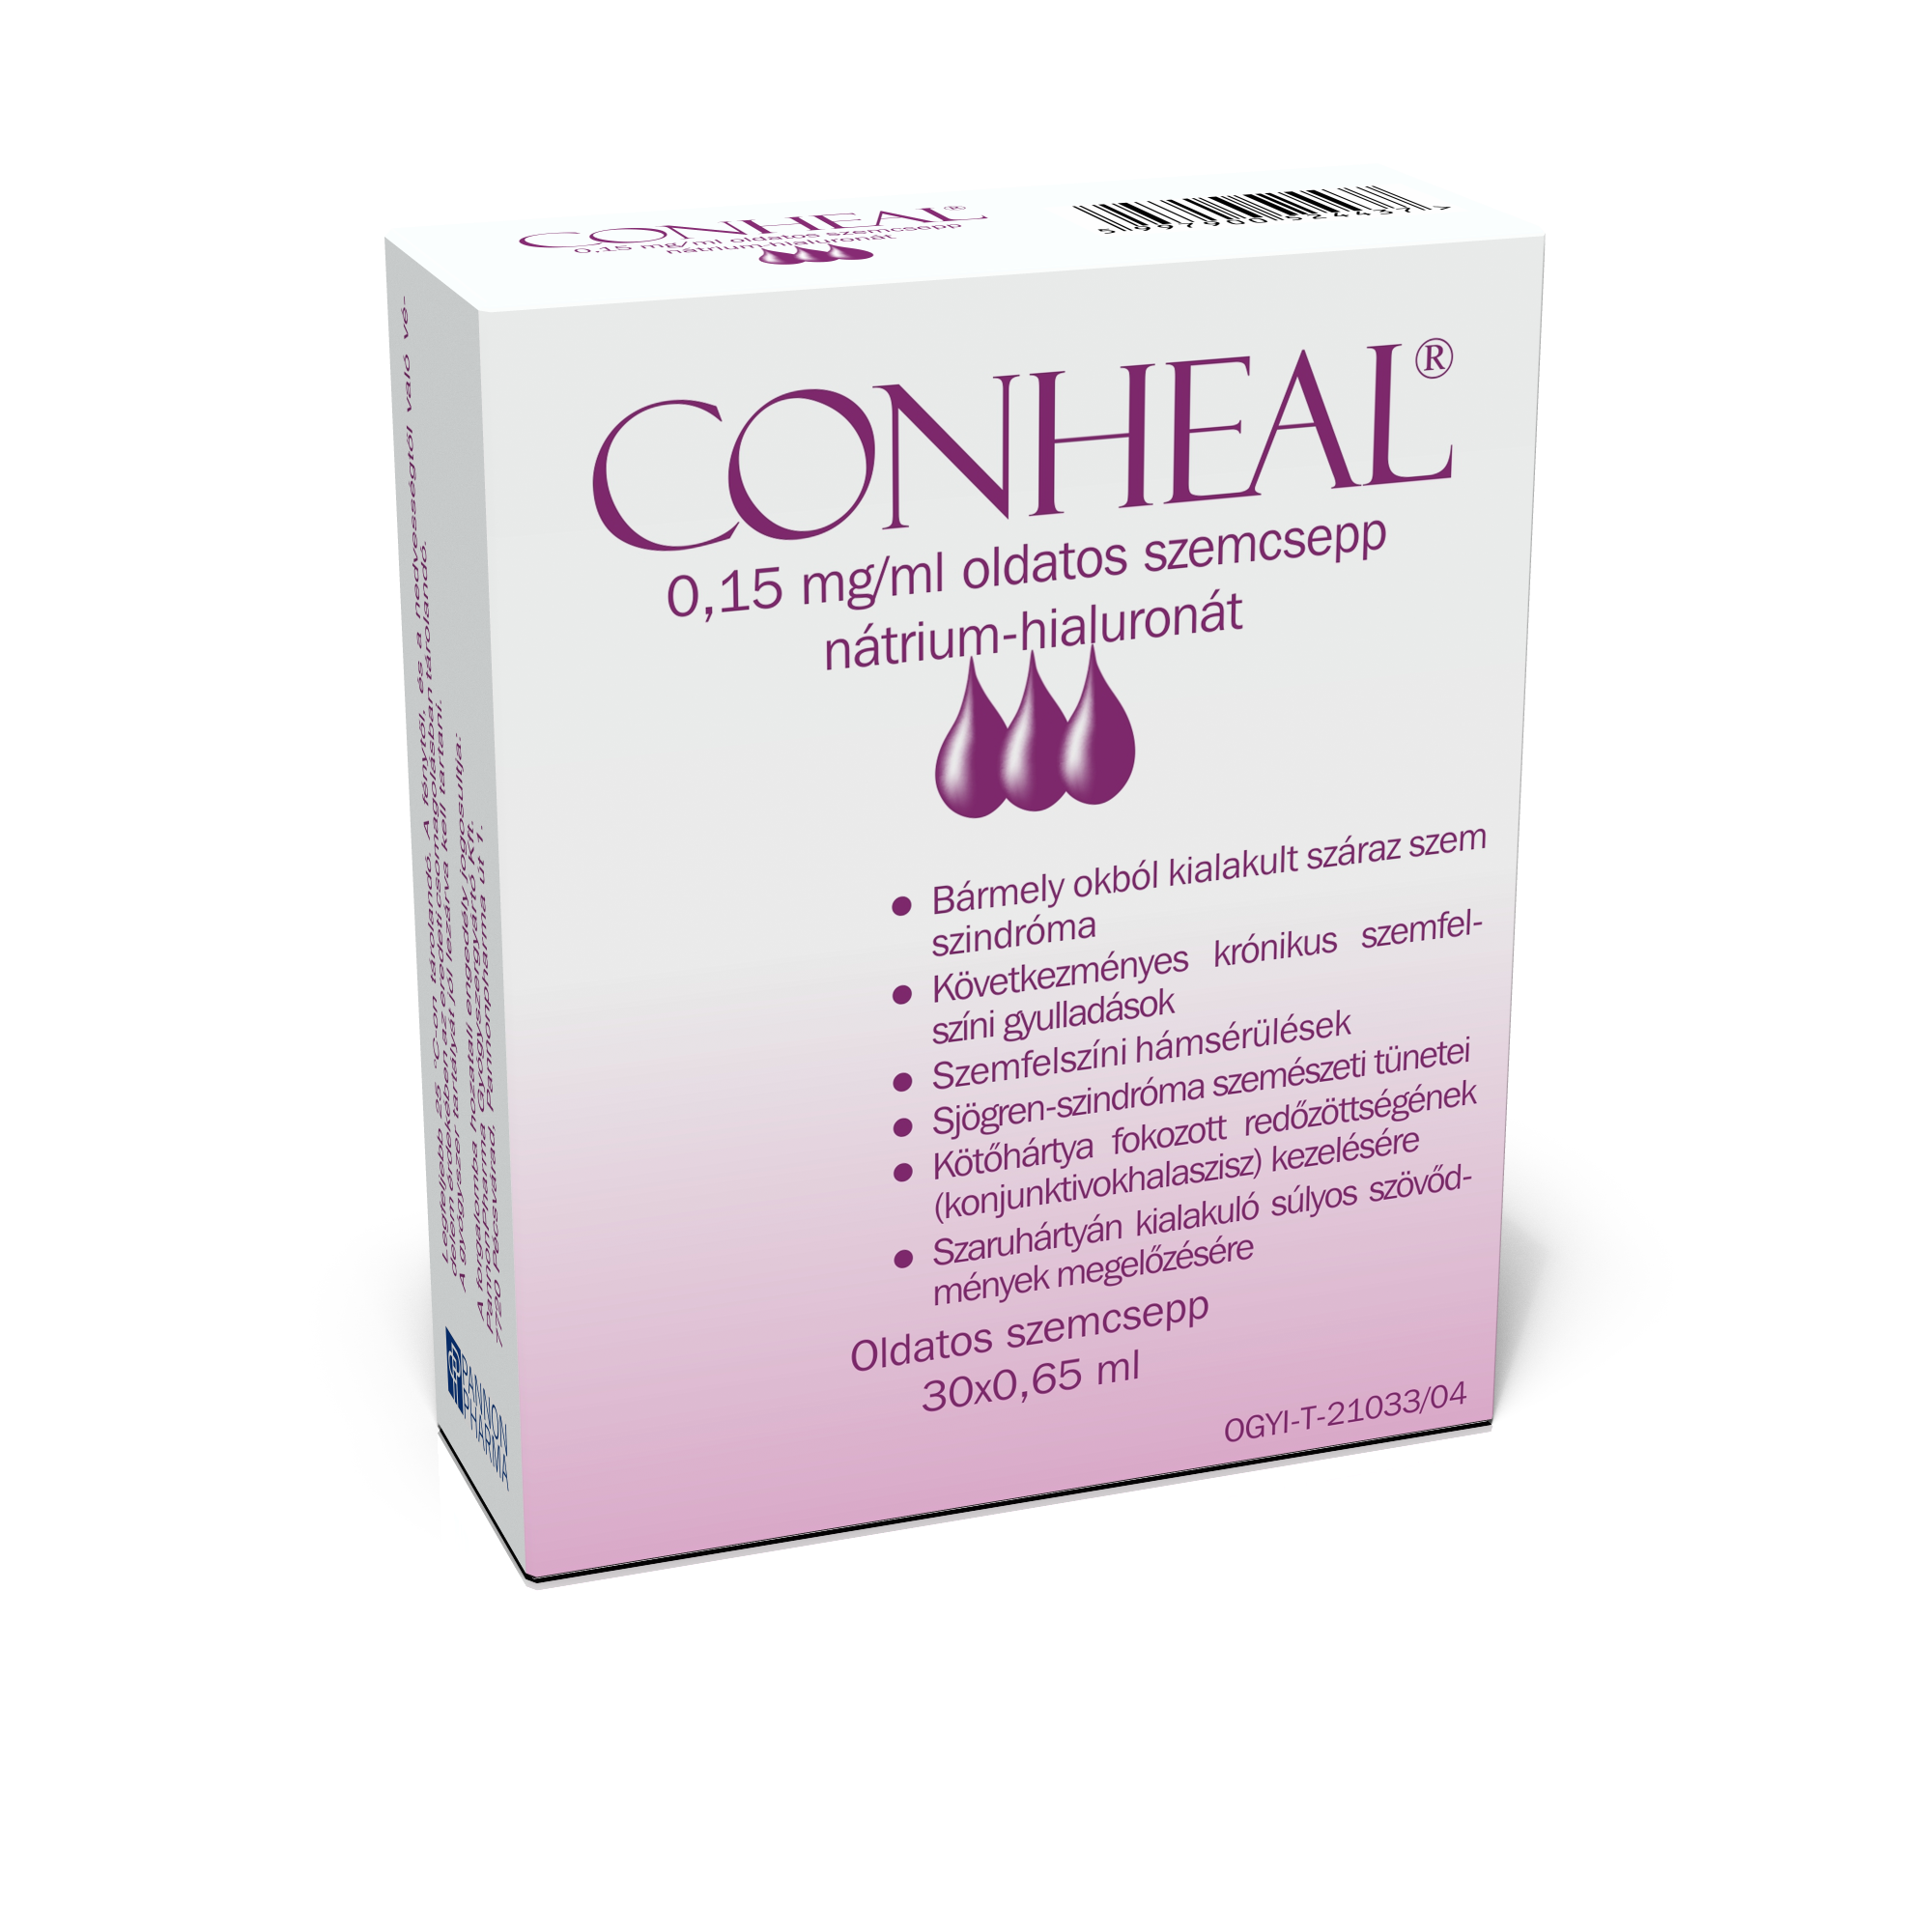 Conheal 0,15 mg/ml oldatos szemcsepp